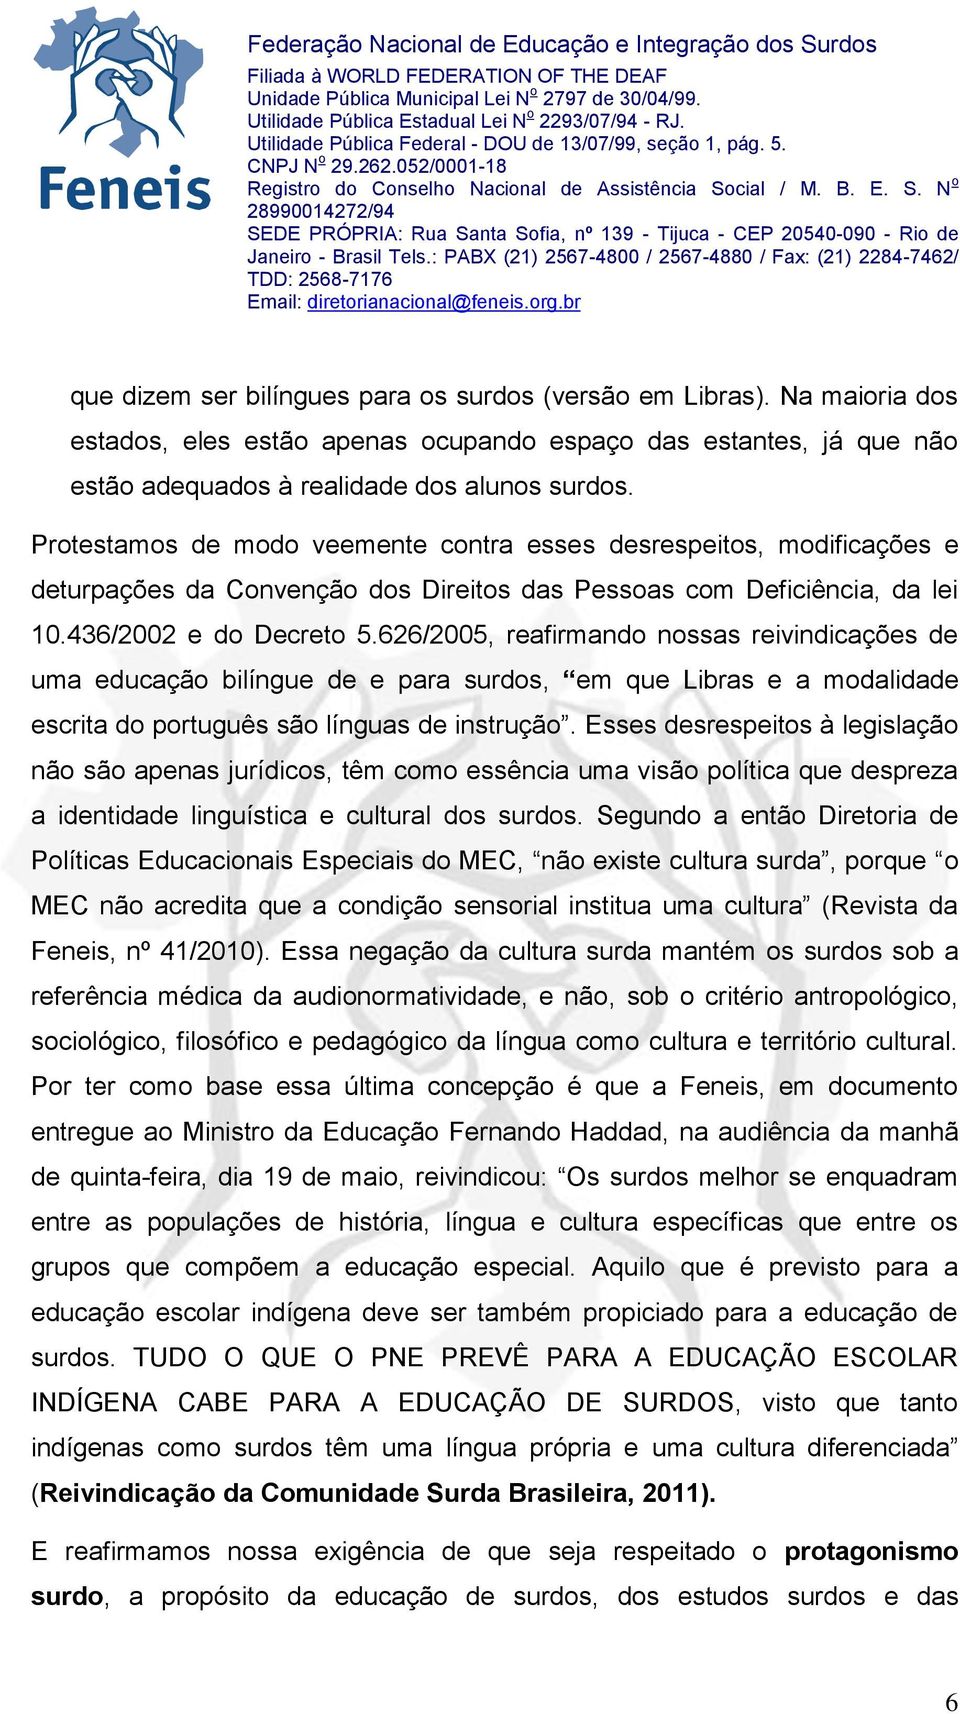 626/2005, reafirmando nossas reivindicações de uma educação bilíngue de e para surdos, em que Libras e a modalidade escrita do português são línguas de instrução.